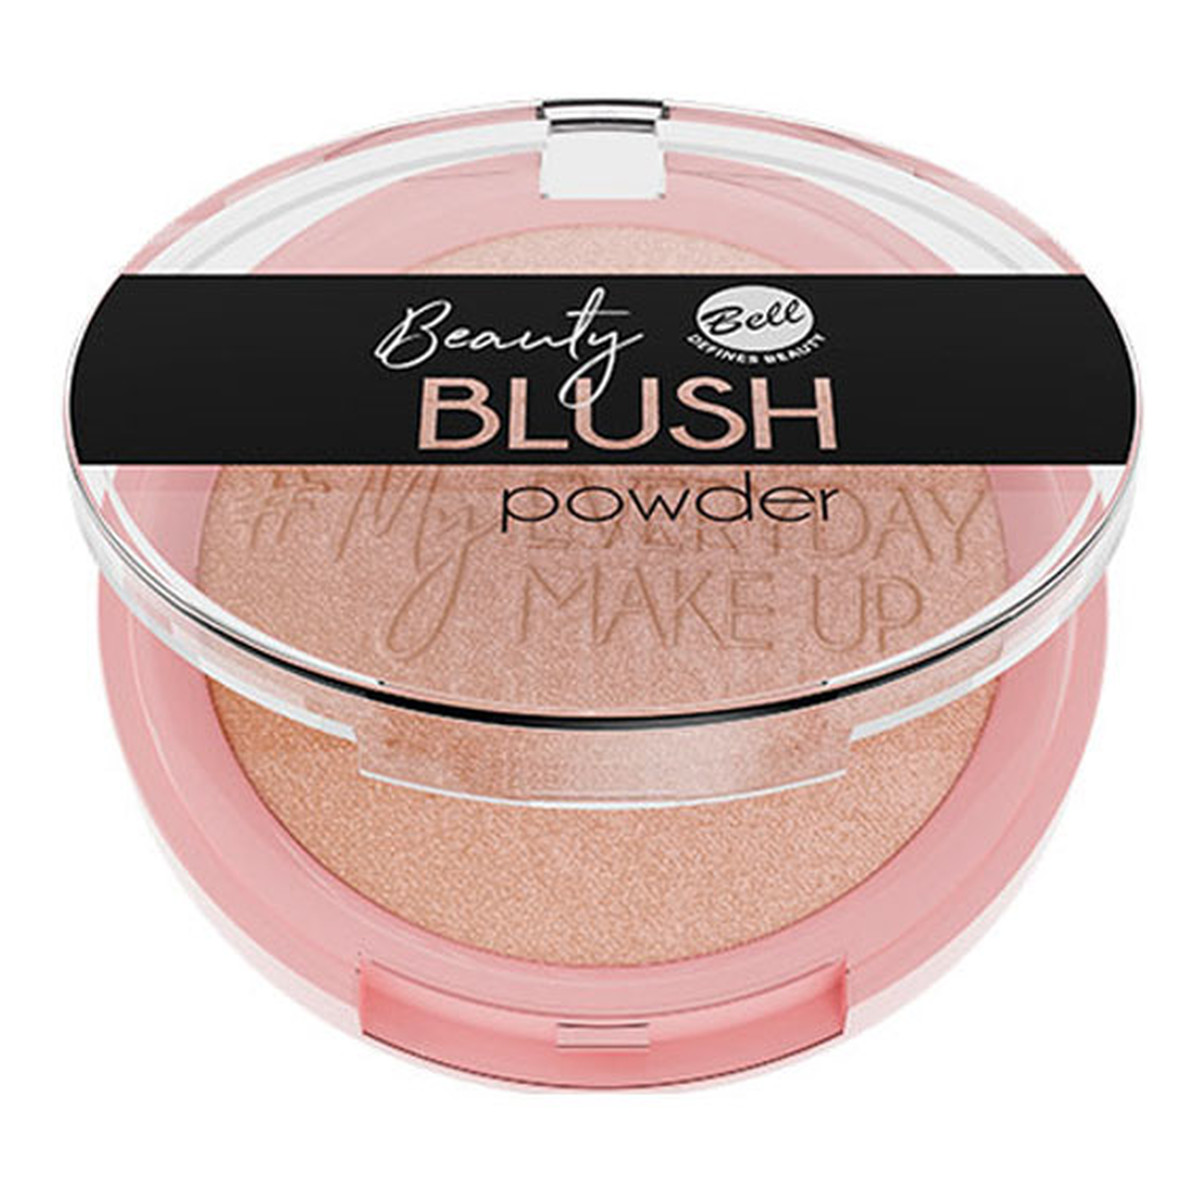 Bell Beauty Blush Powder Róż rozświetlający 6g